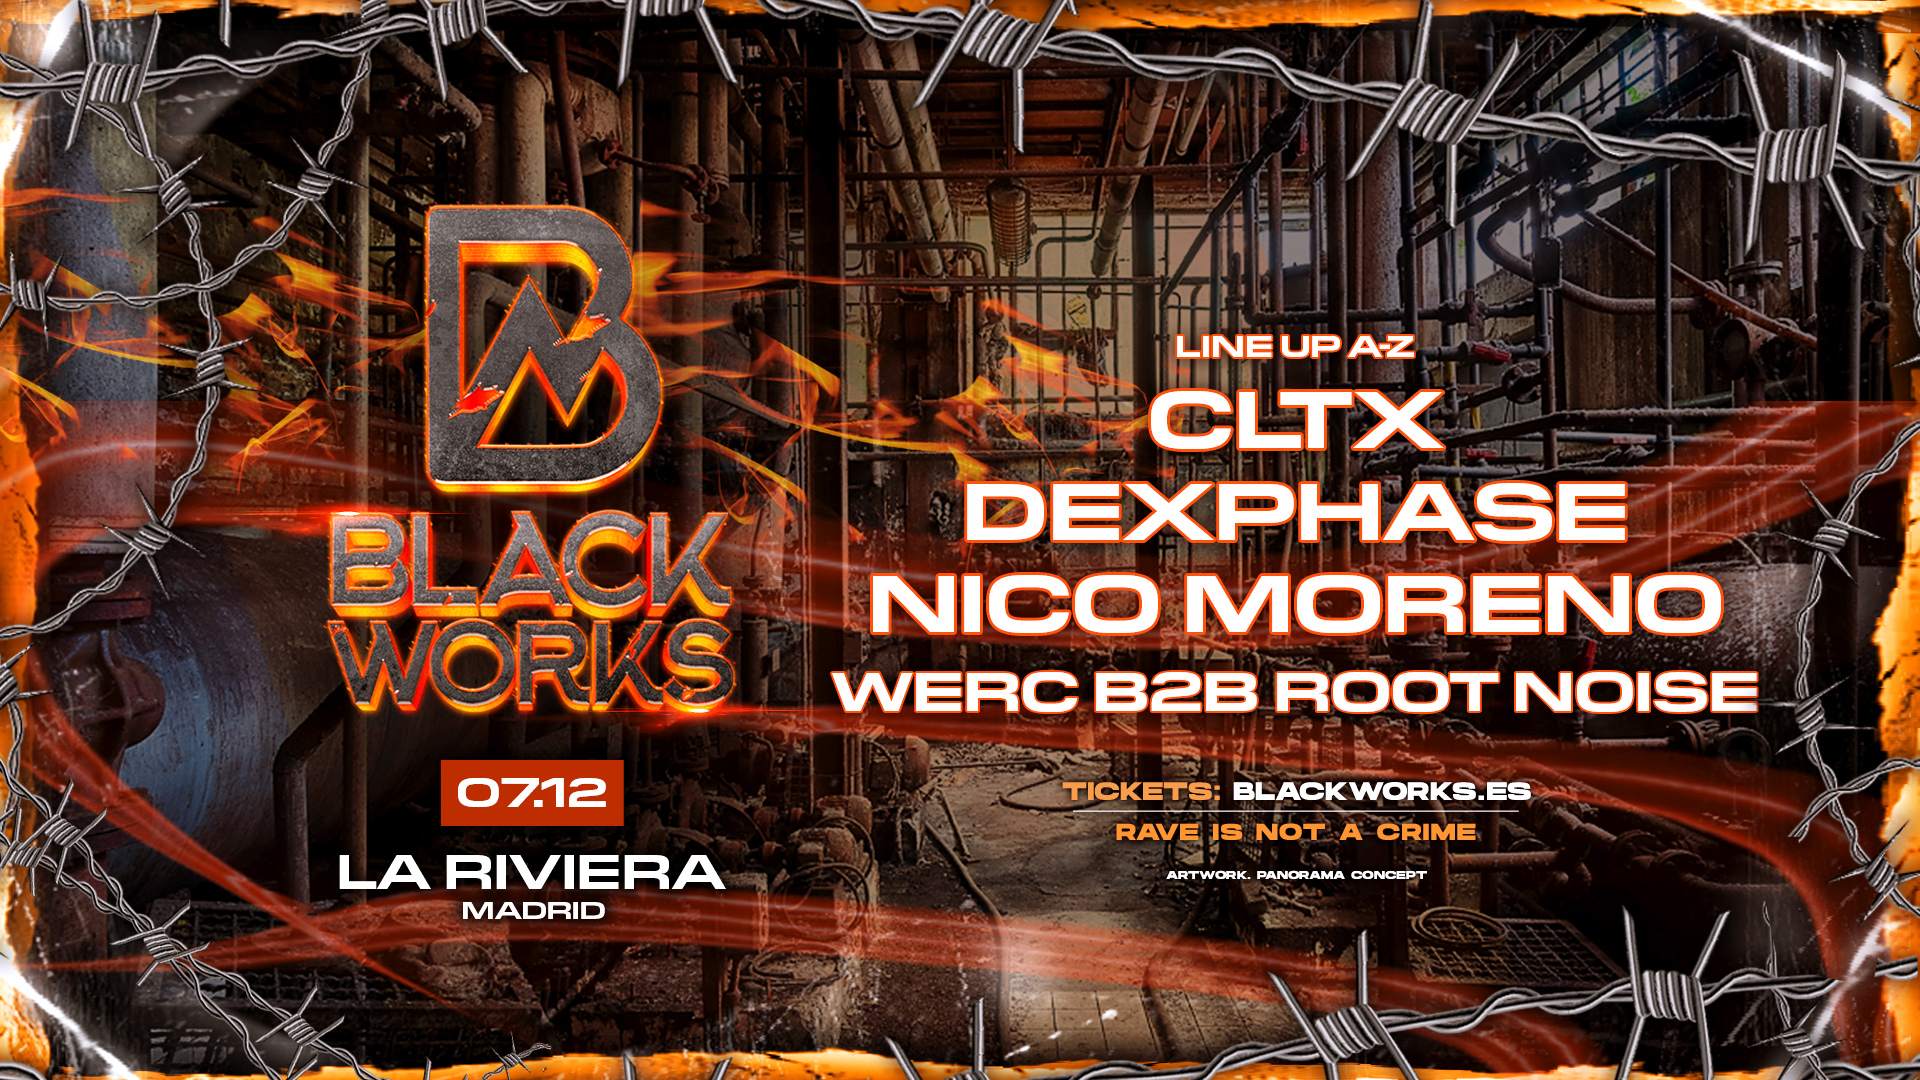 BlackWorks: Nico Moreno + CLTX + Dexphase - Página frontal